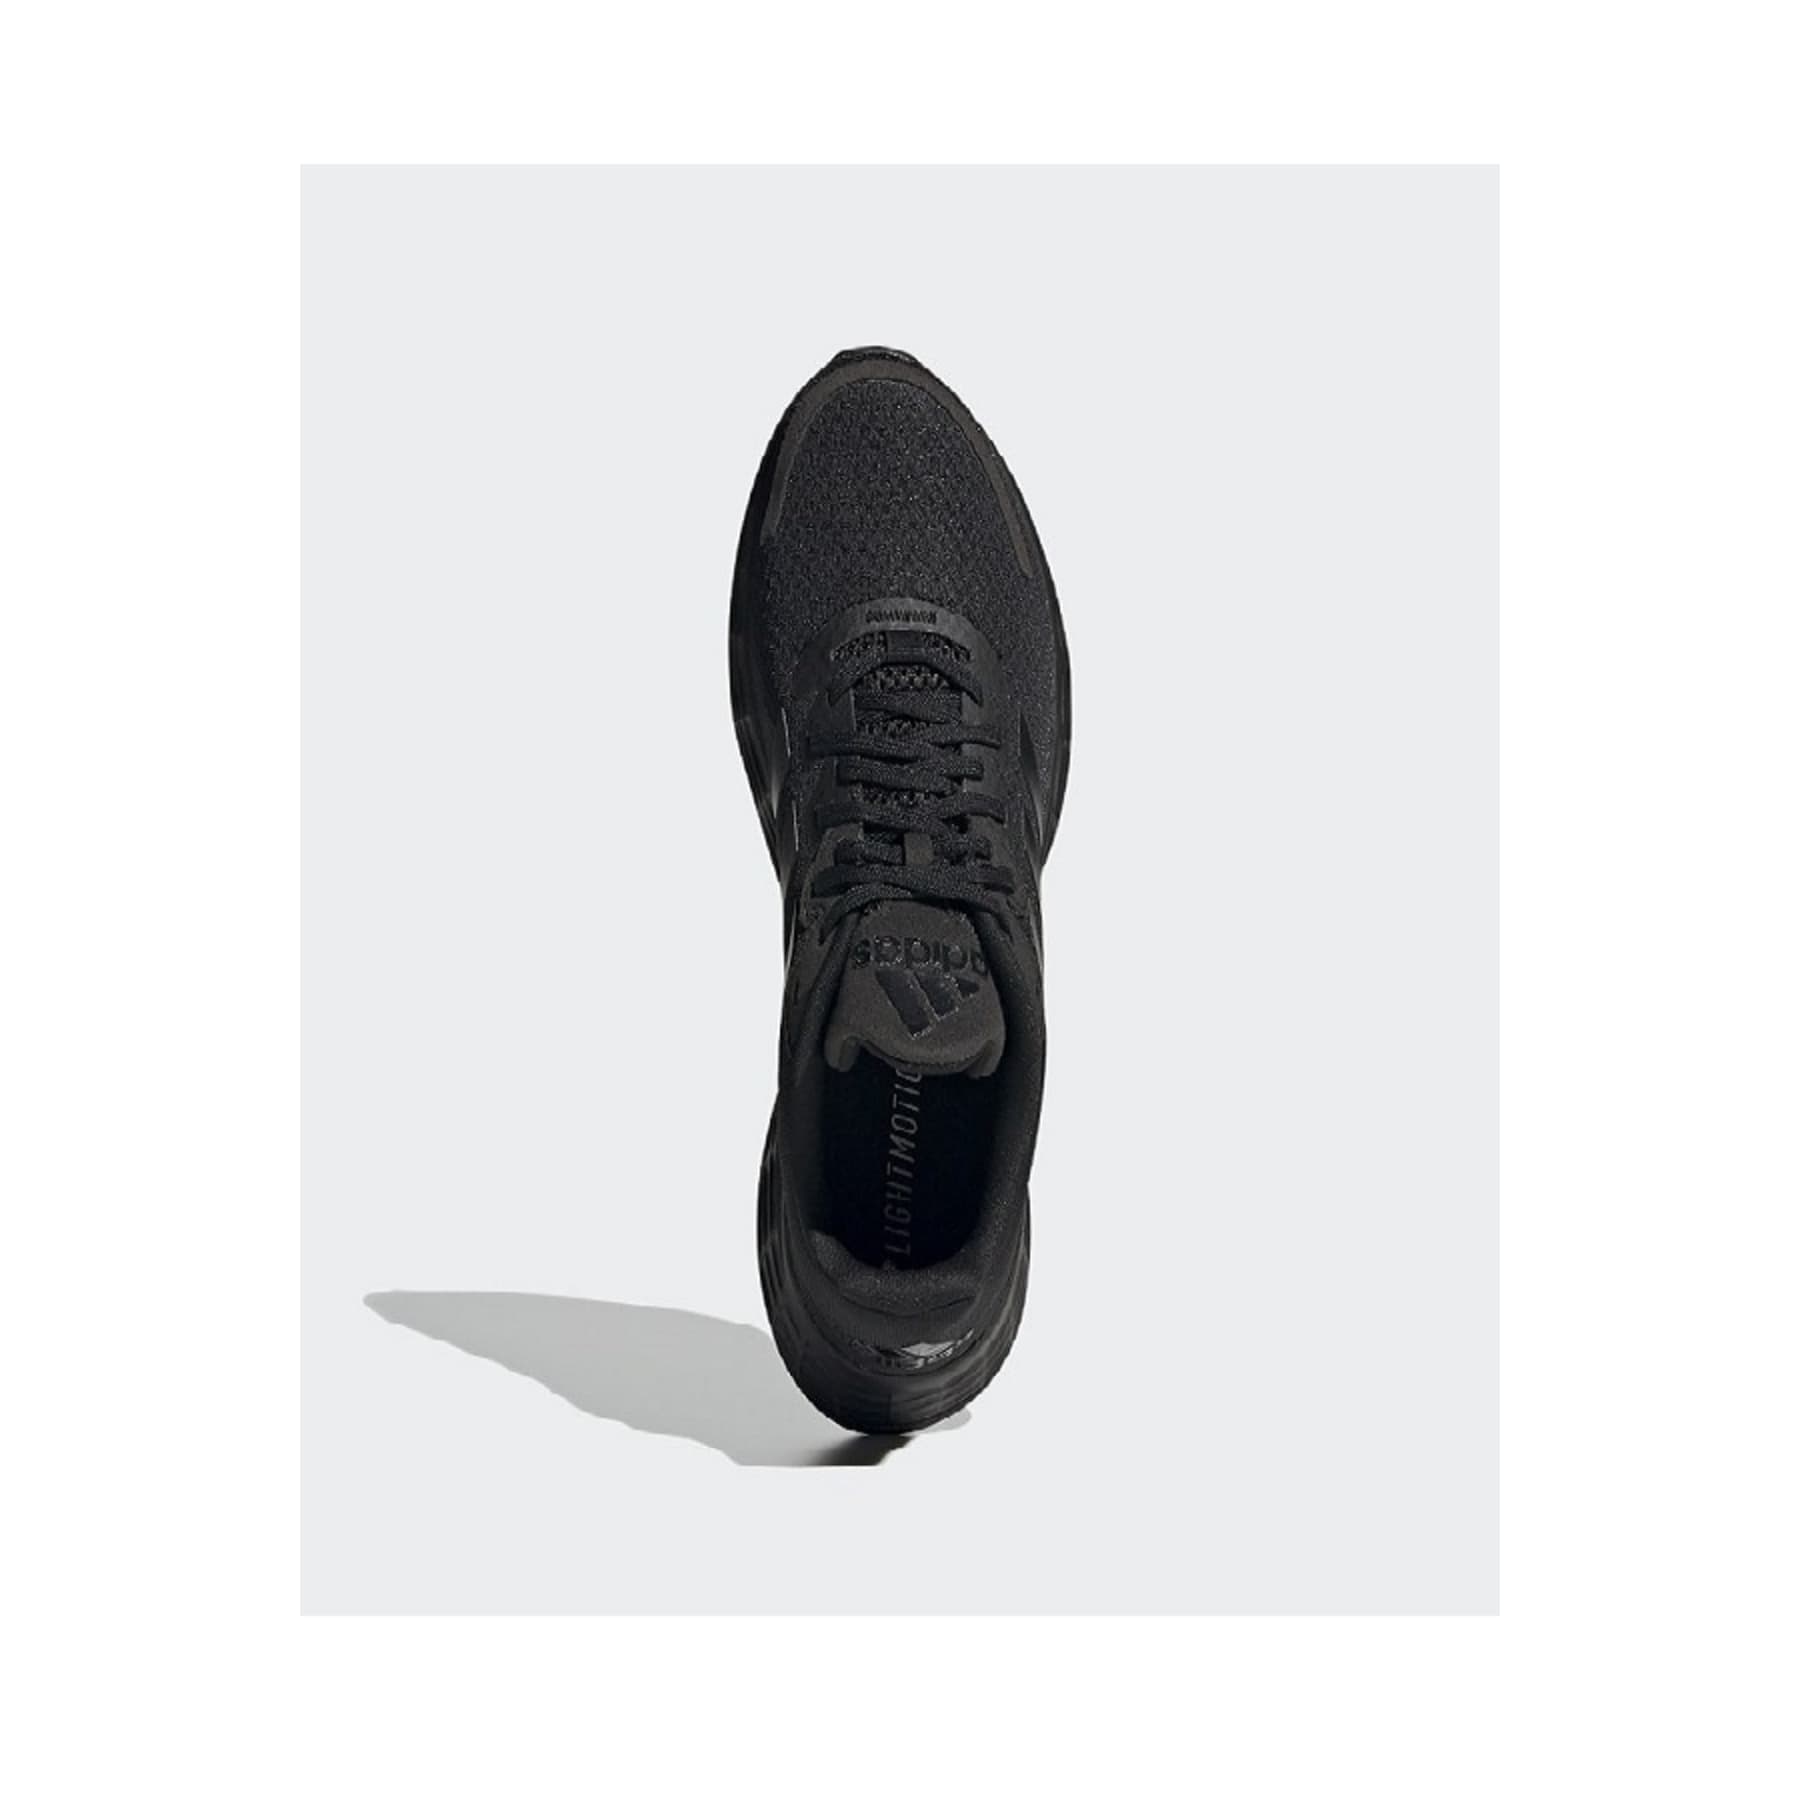 Duramo SL Kadın Siyah Koşu Ayakkabısı (FX7306)